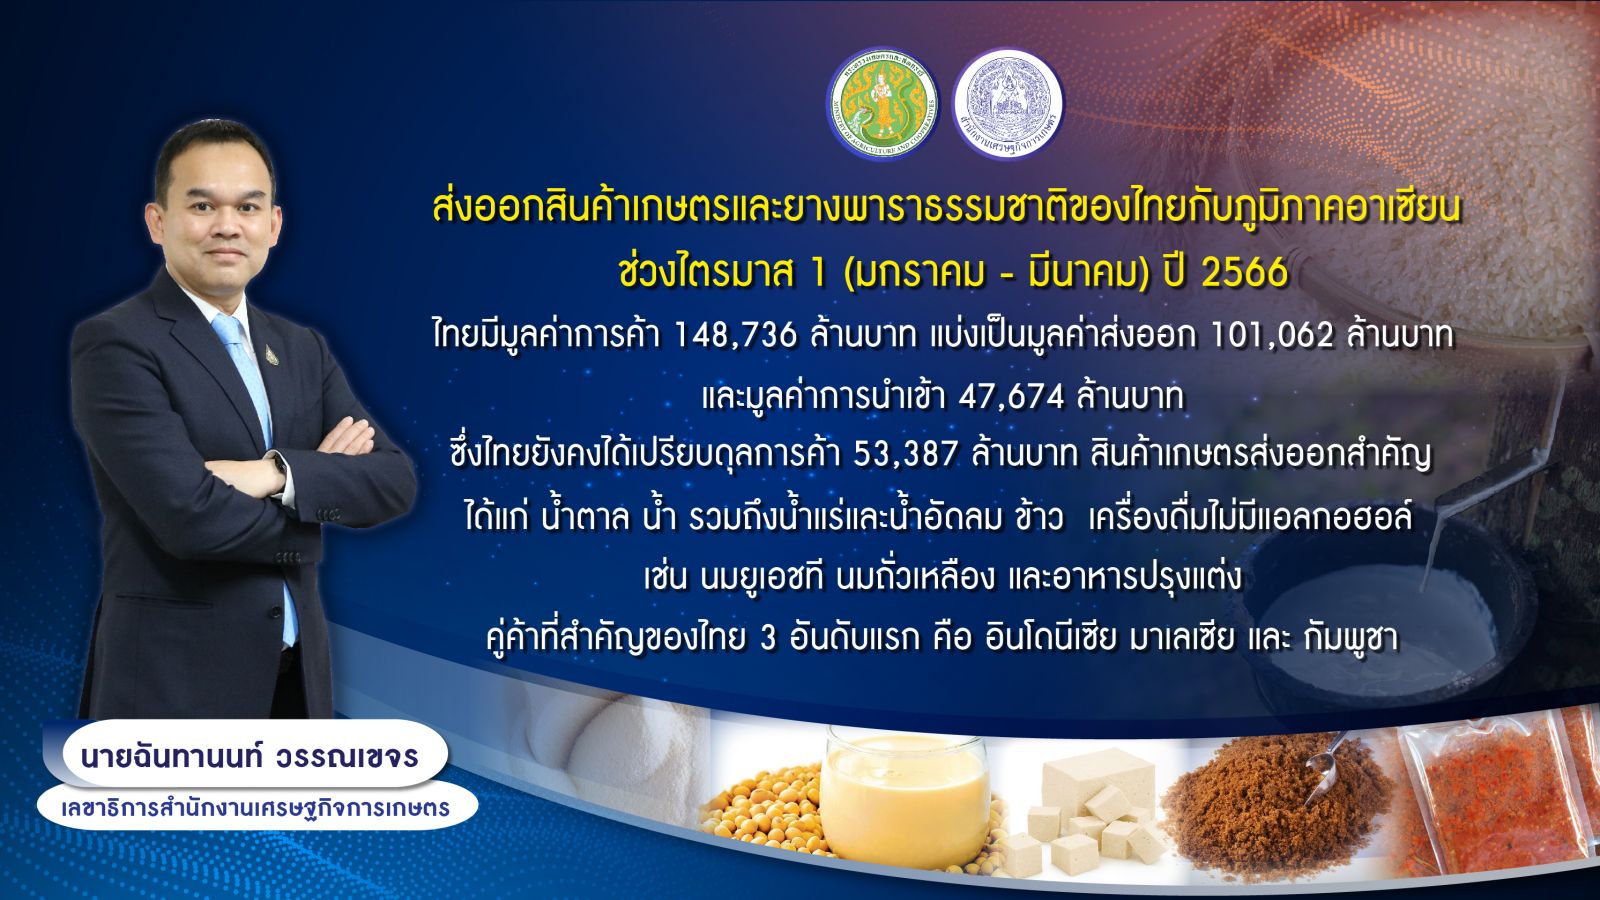 สศก. ระบุ ส่งออกสินค้าเกษตรไทยไปอาเซียน ไตรมาสแรก มูลค่าส่งออก 1 แสนล้านบาท ไทยได้เปรียบดุลการค้า 53,387 ล้านบาท